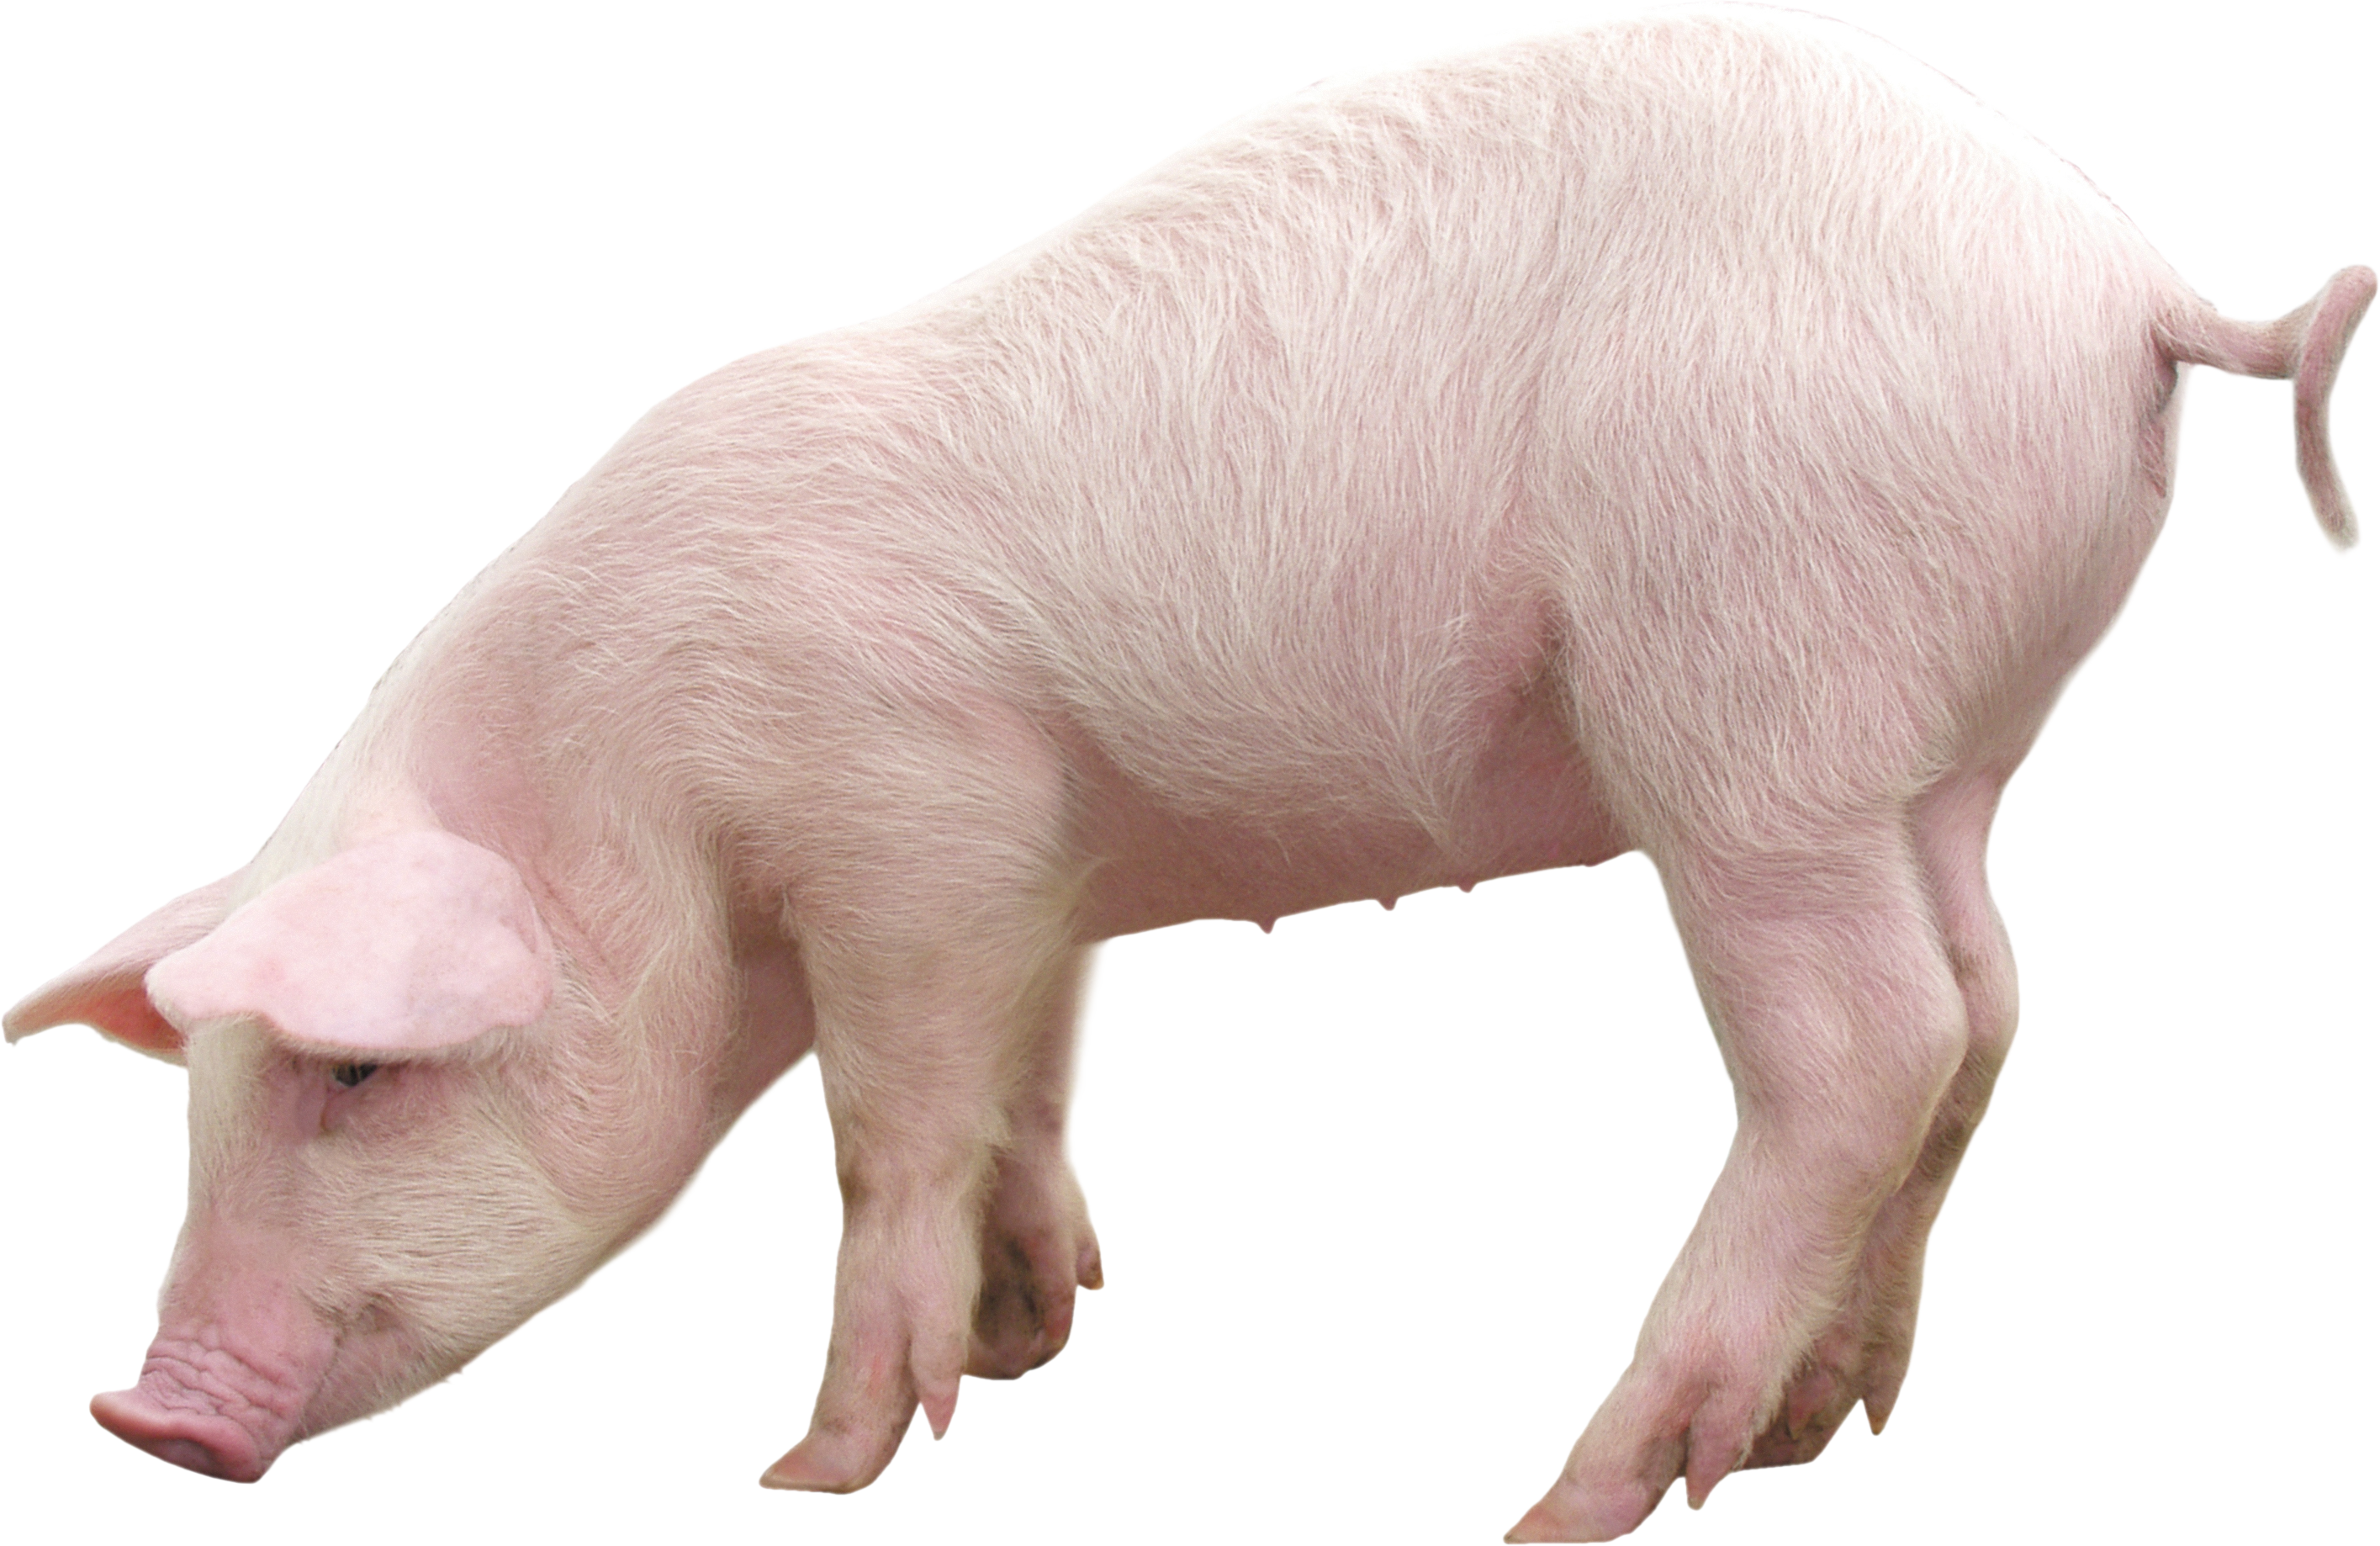 Immagine Trasparente del maiale della fattoria